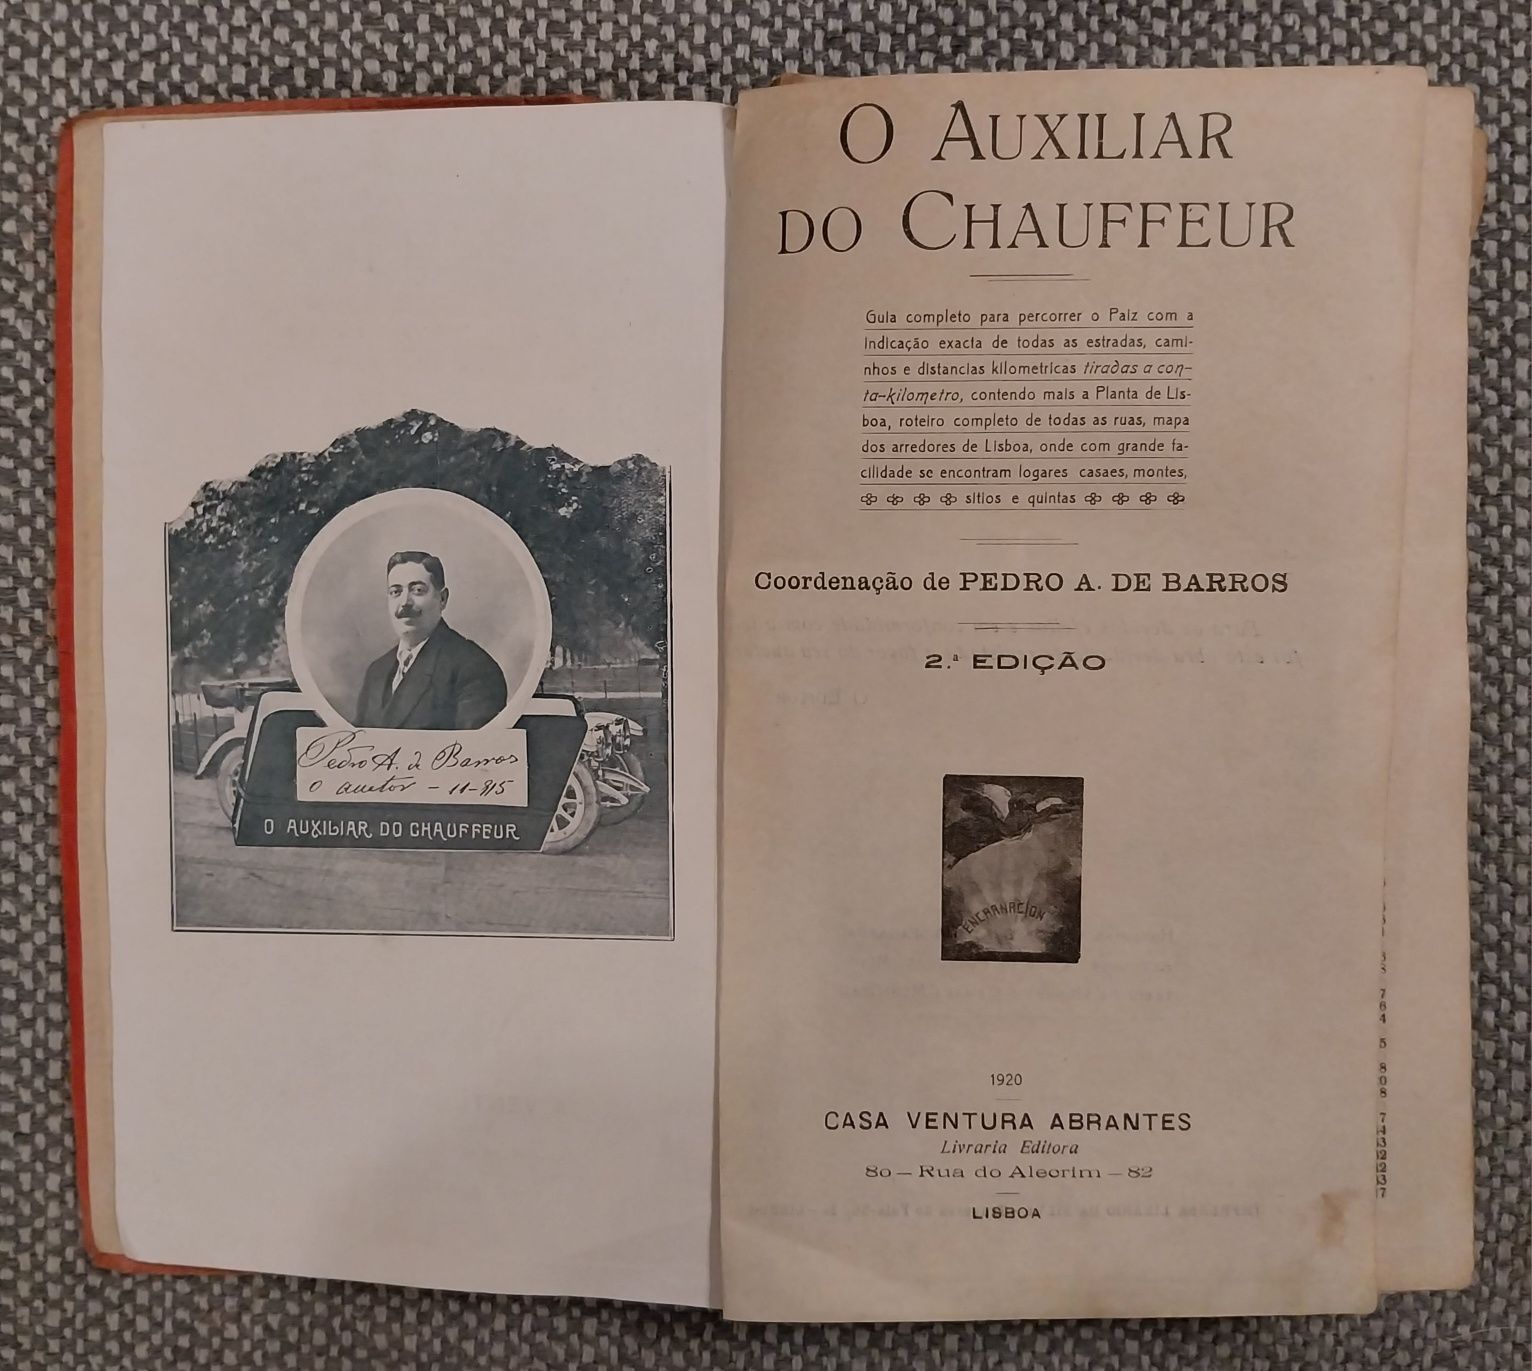 Vendo livro "O Auxiliar do Chauffer" de 1920